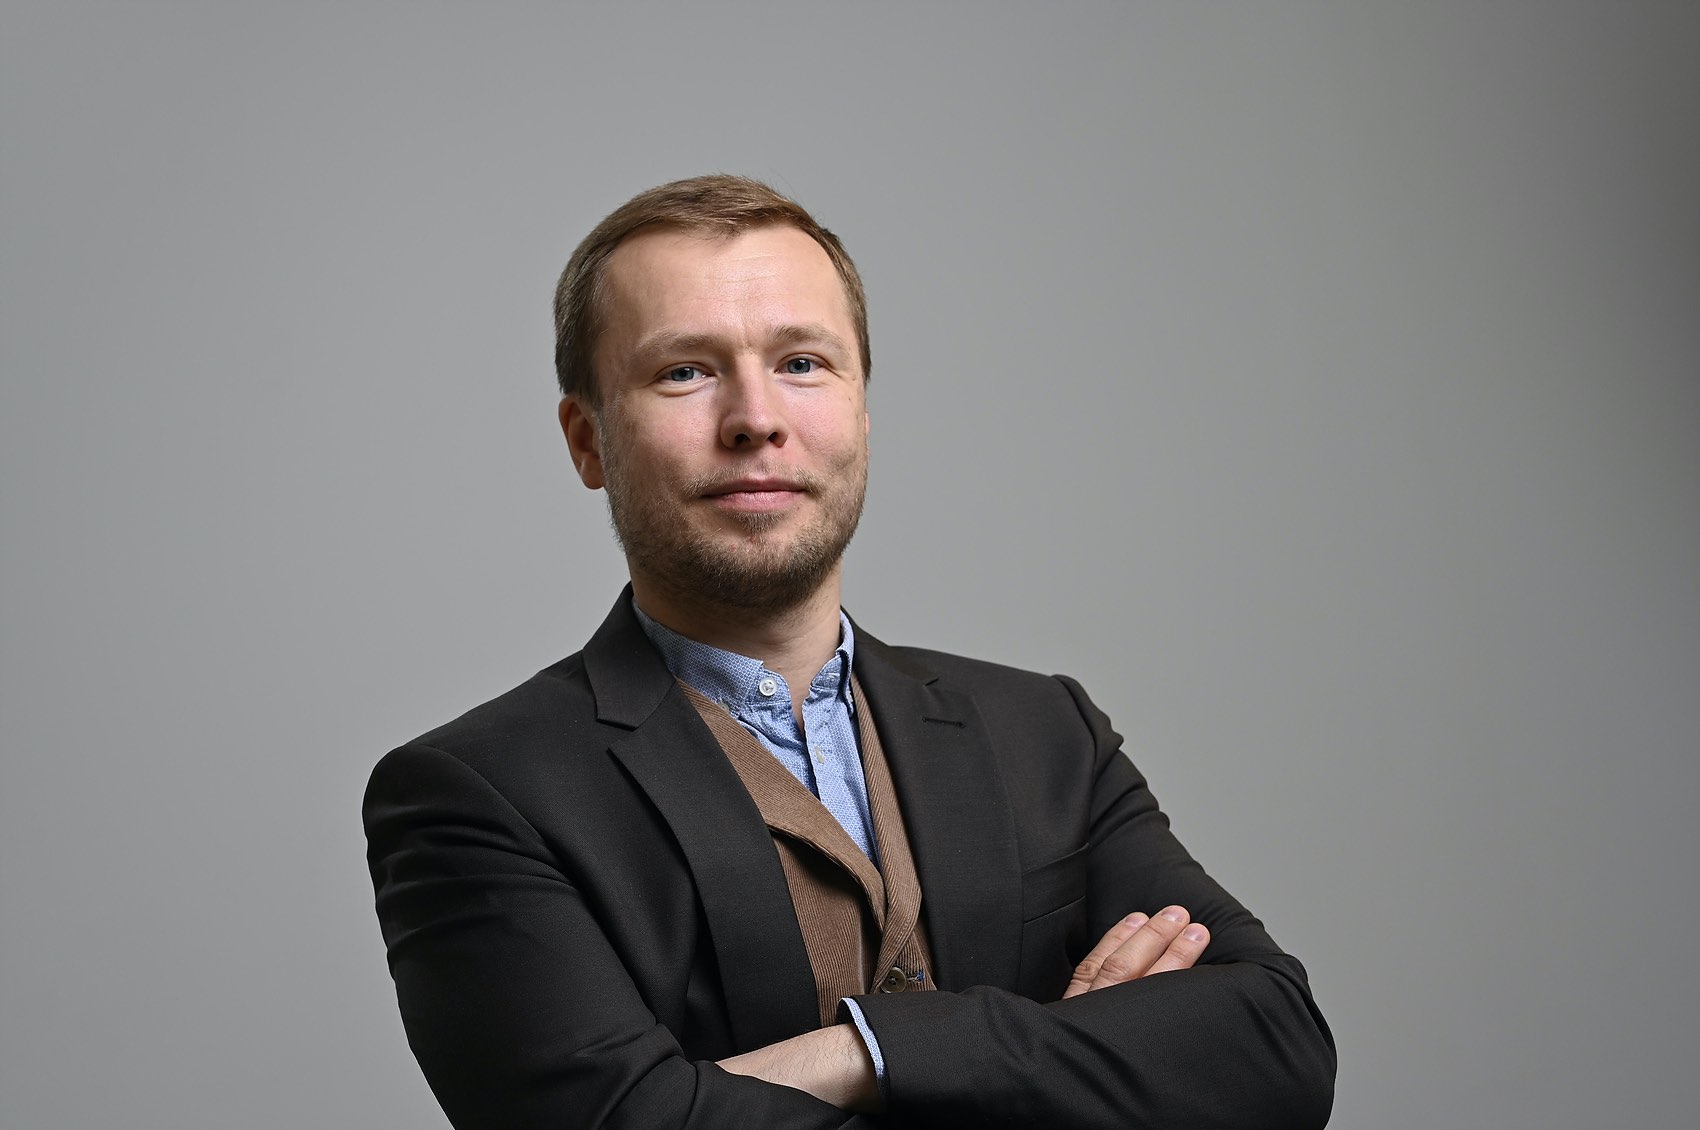 Mr. Sergei Dutov